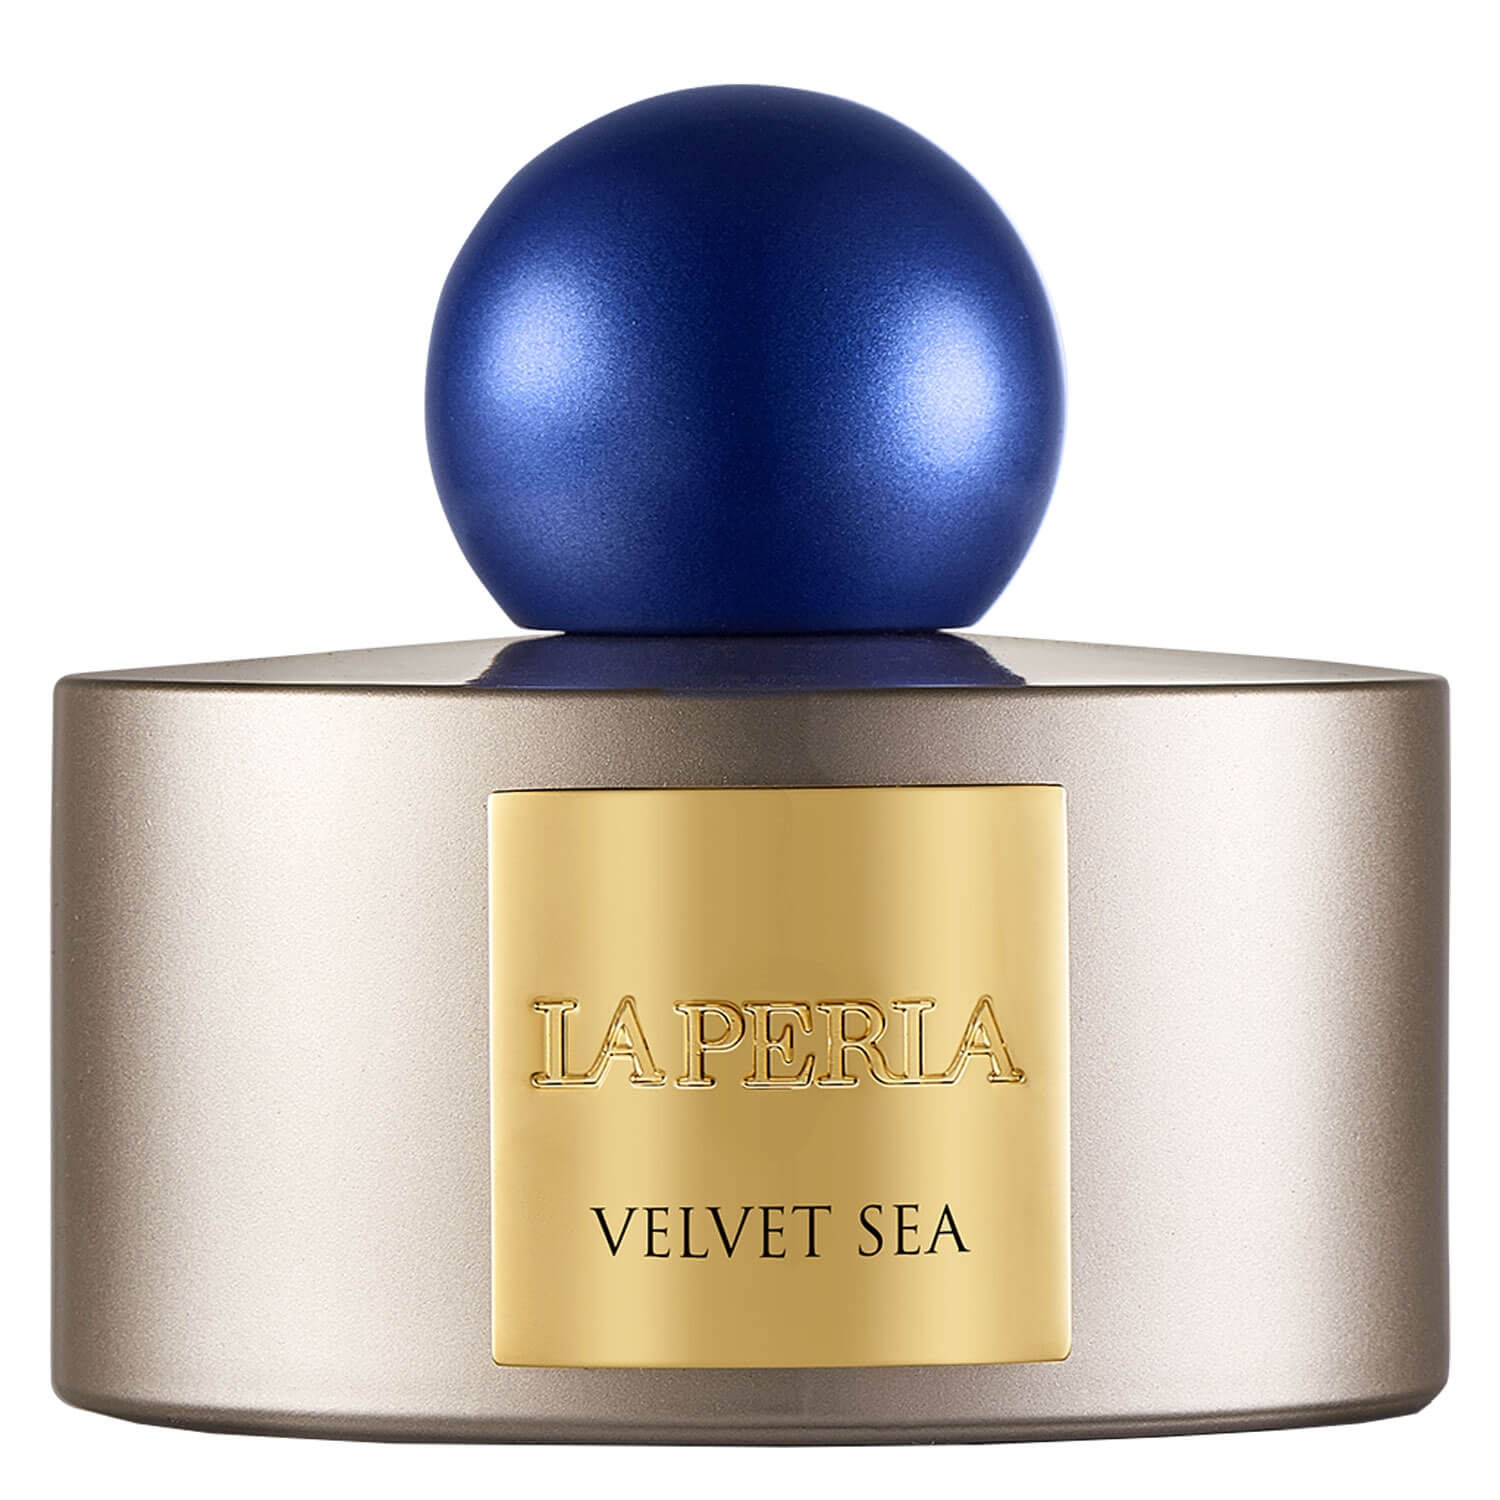 Produktbild von Velvet Sea - Room Fragrance